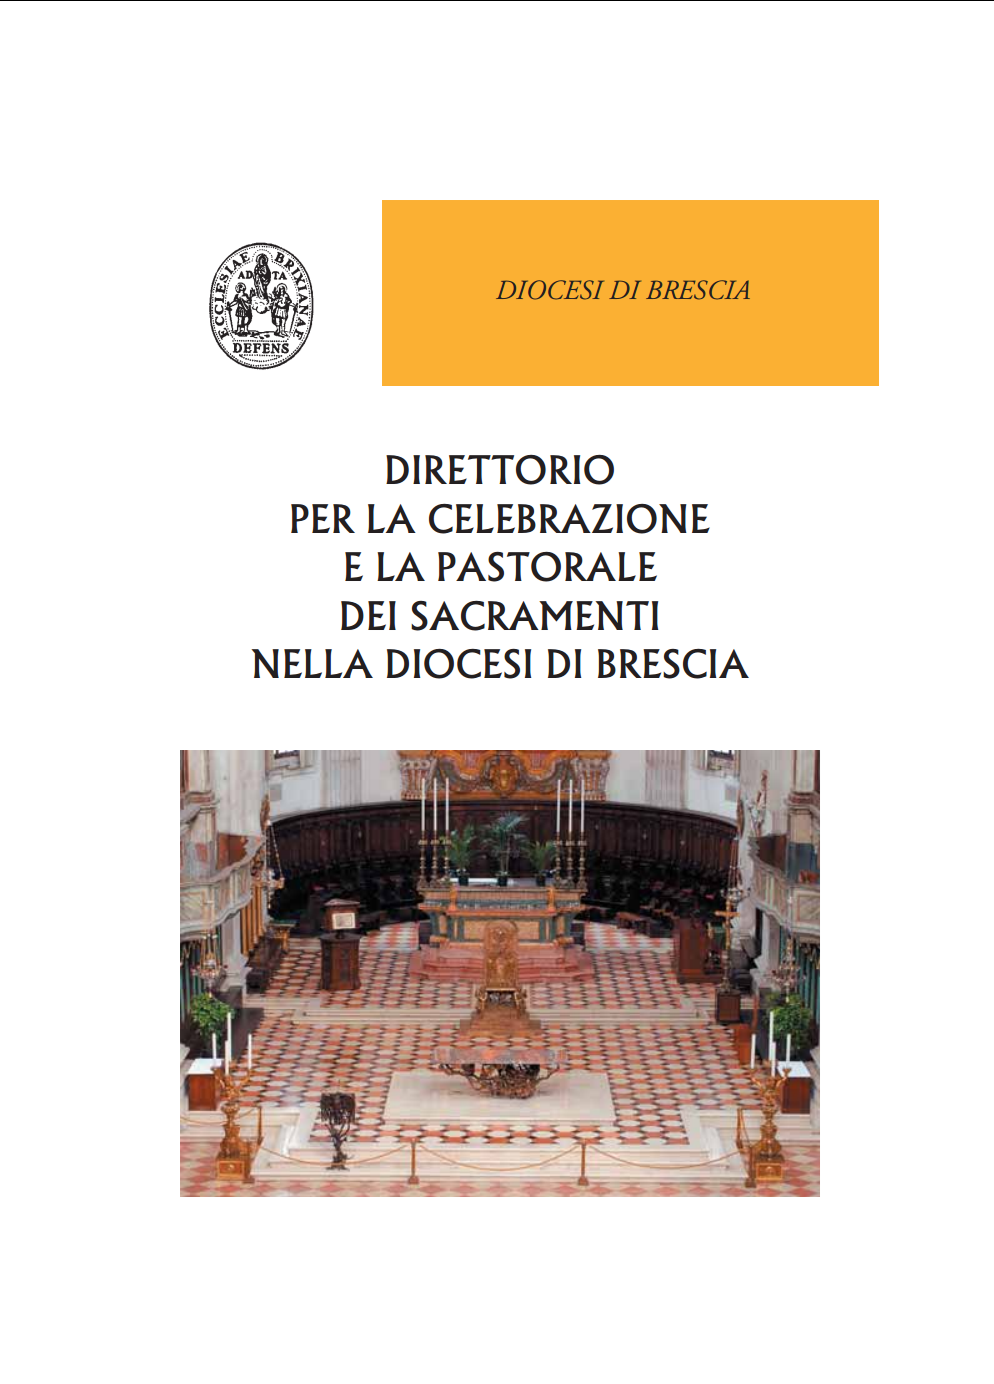 2007 04 05 direttorio liturgico sacramenti